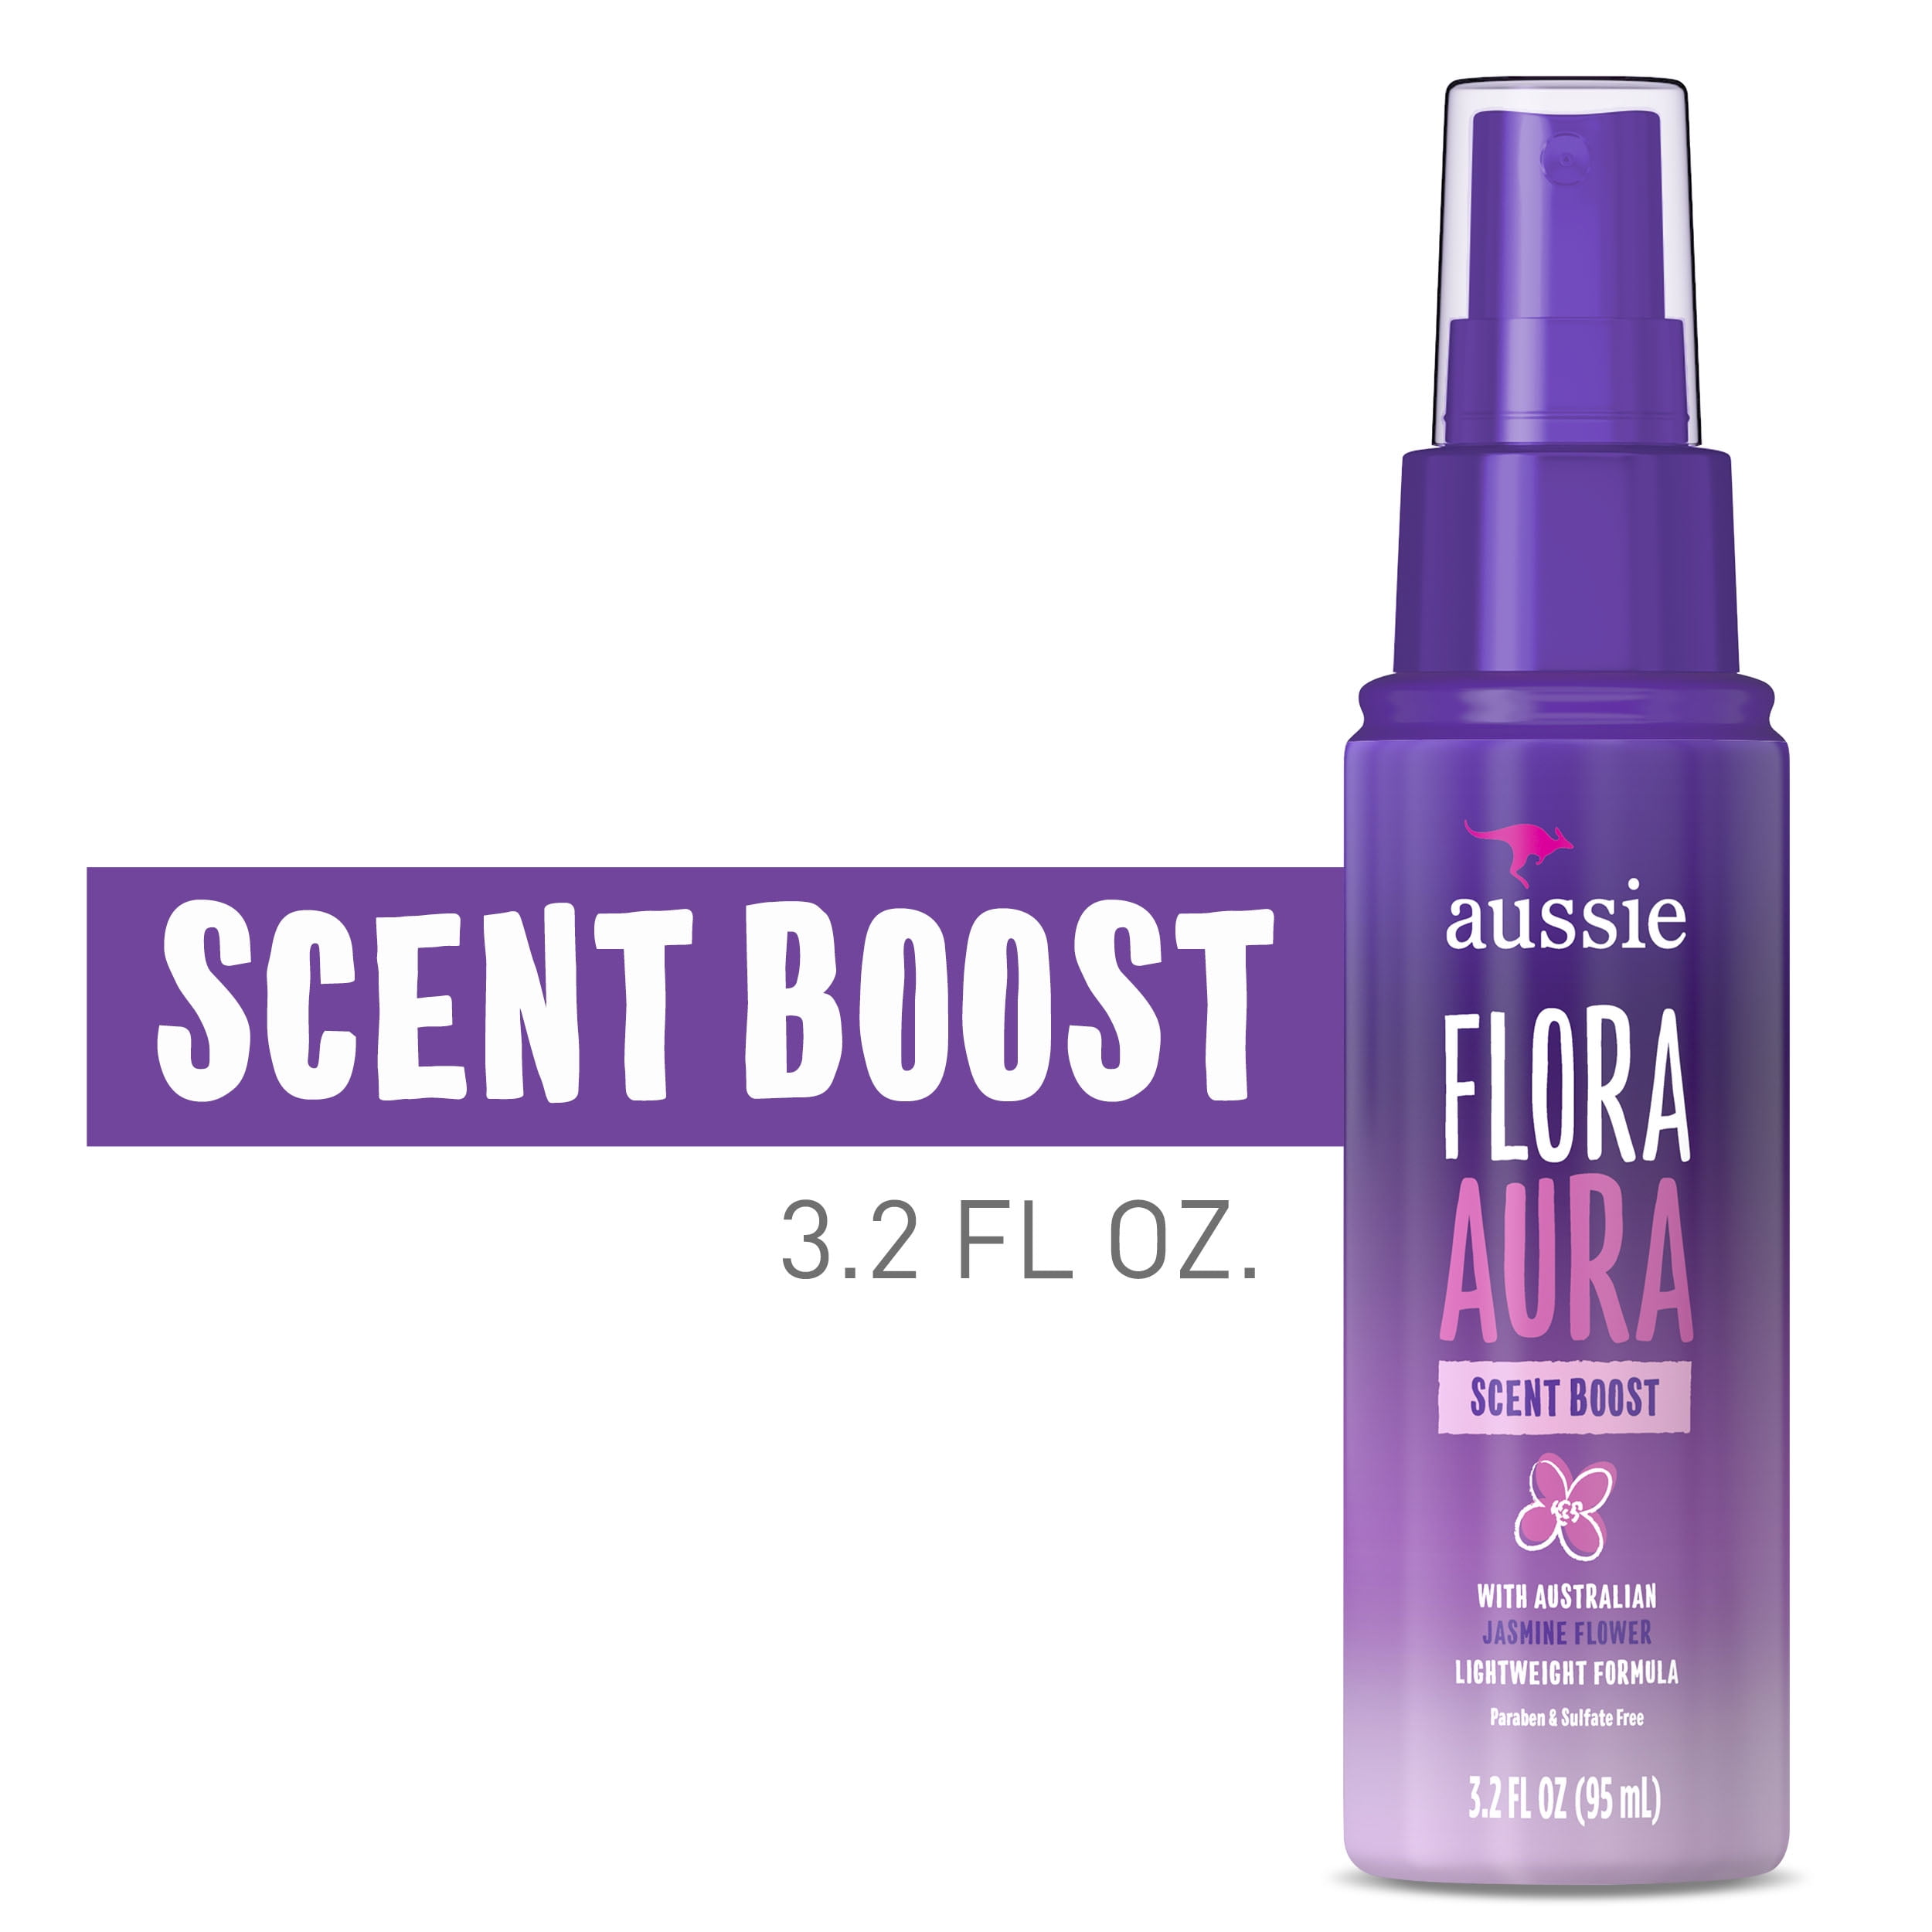 Aussie Flora Aura Scent Boost Hair Spray, Paraben Free, 3.2 fl oz